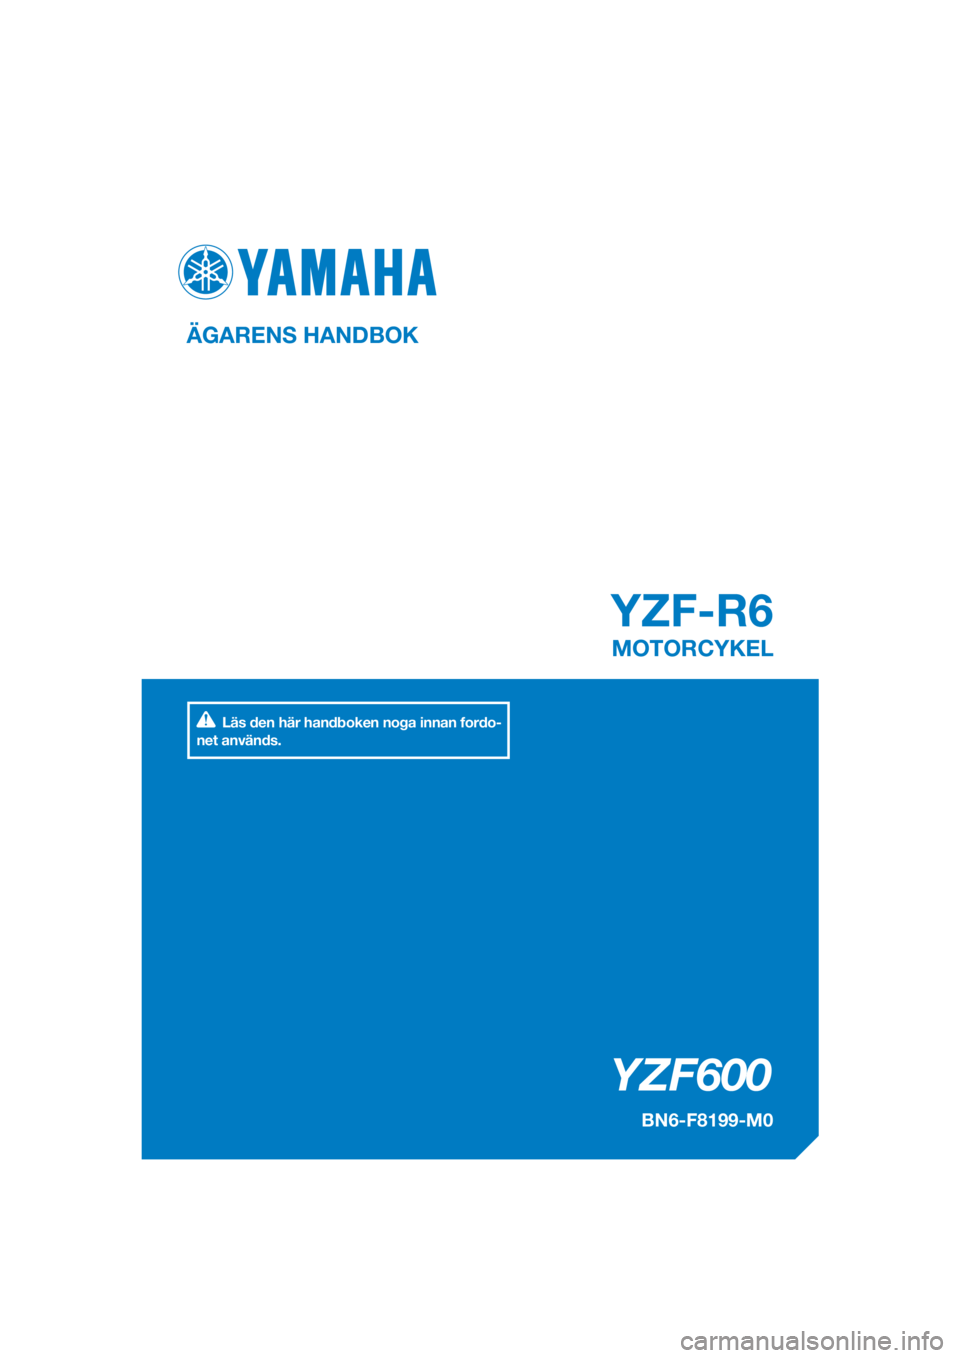 YAMAHA YZF-R6 2017  Bruksanvisningar (in Swedish) DIC183
YZF600
YZF-R6
ÄGARENS HANDBOK
BN6-F8199-M0
MOTORCYKEL
[Swedish  (M)]
Läs den här handboken noga innan fordo-
net används. 